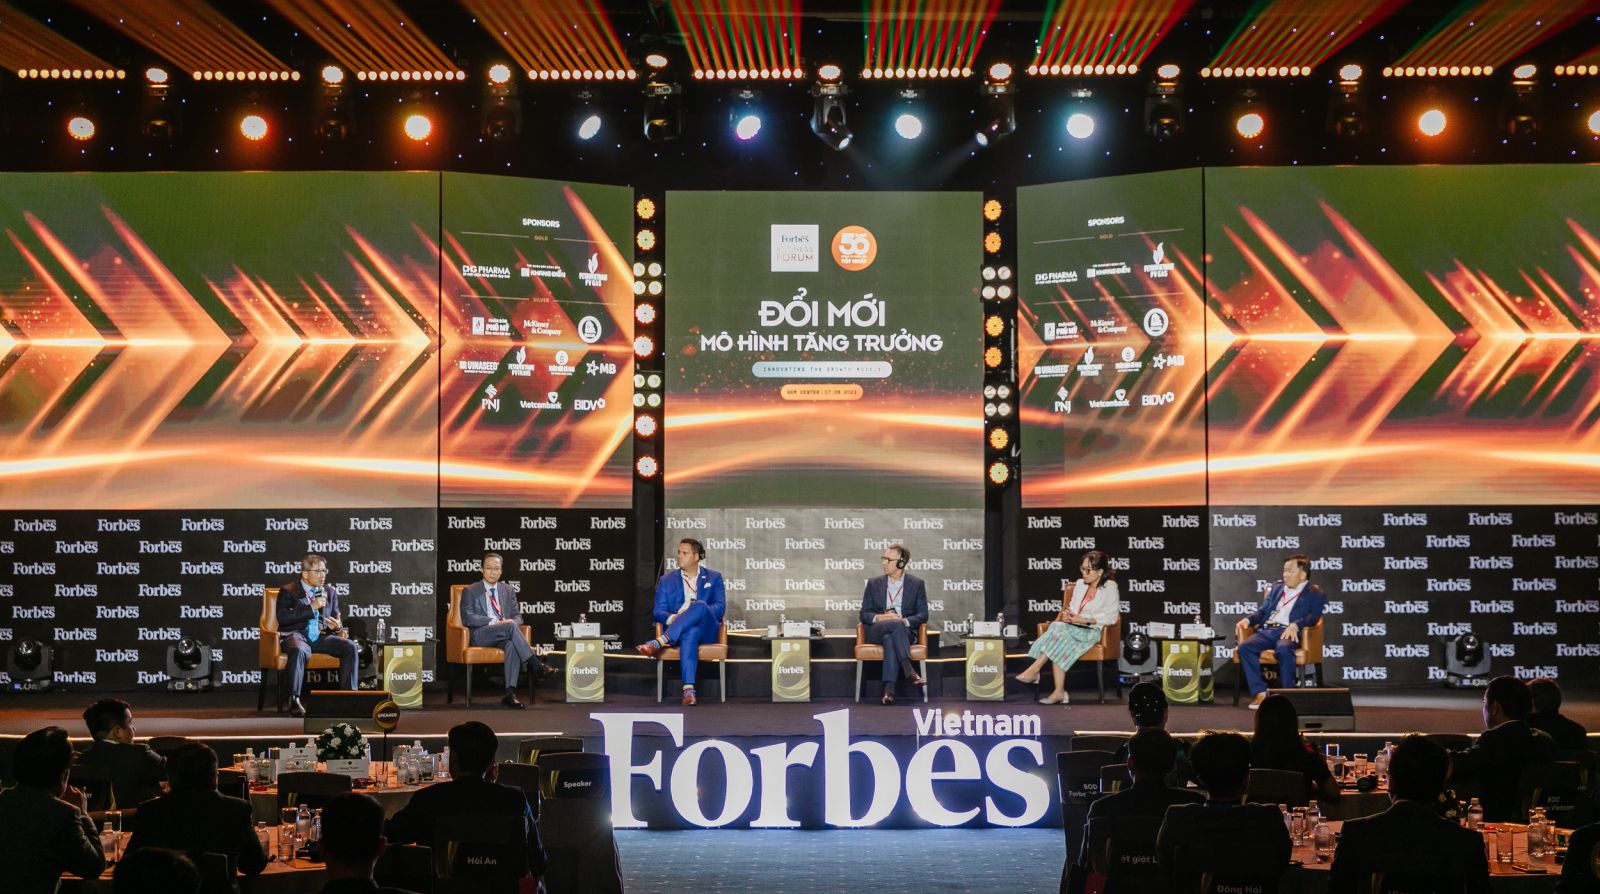 Diễn đàn Kinh doanh thường niên của Forbes Việt Nam năm 2023 có chủ đề “Đổi mới mô hình tăng trưởng”p/